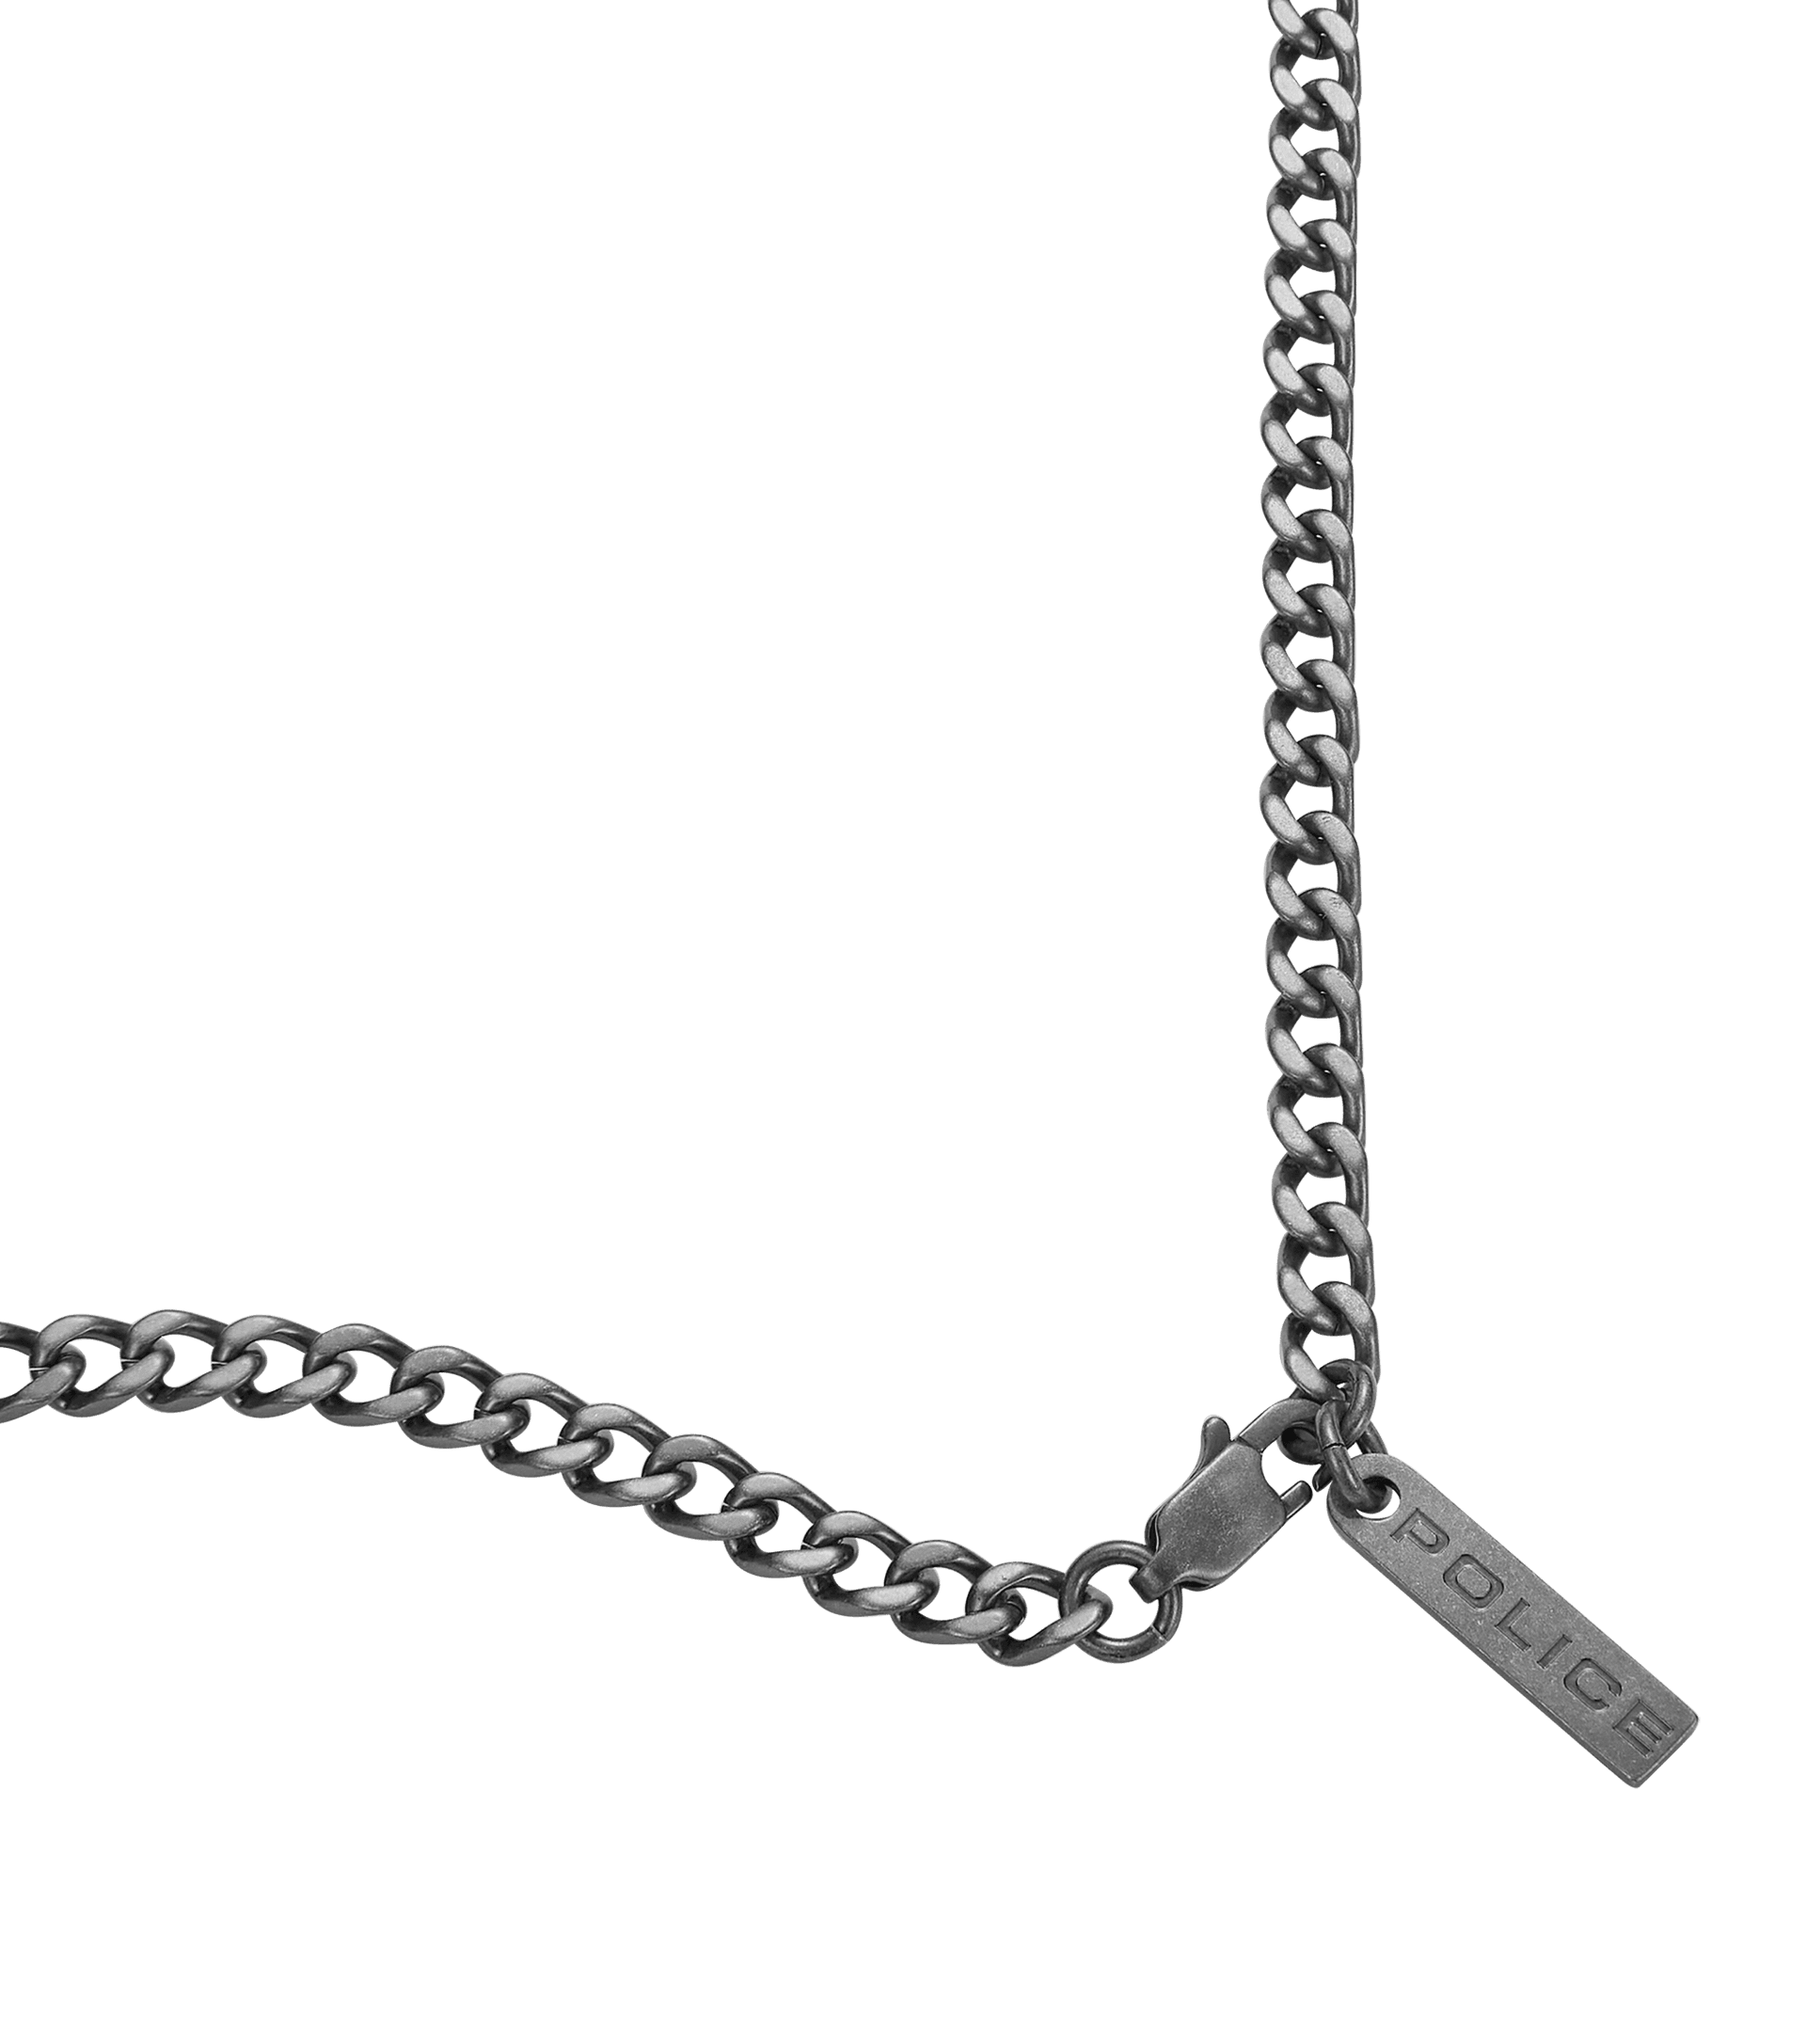 Police jewels - Framed Halskette Police für Herren PEAGN0005301